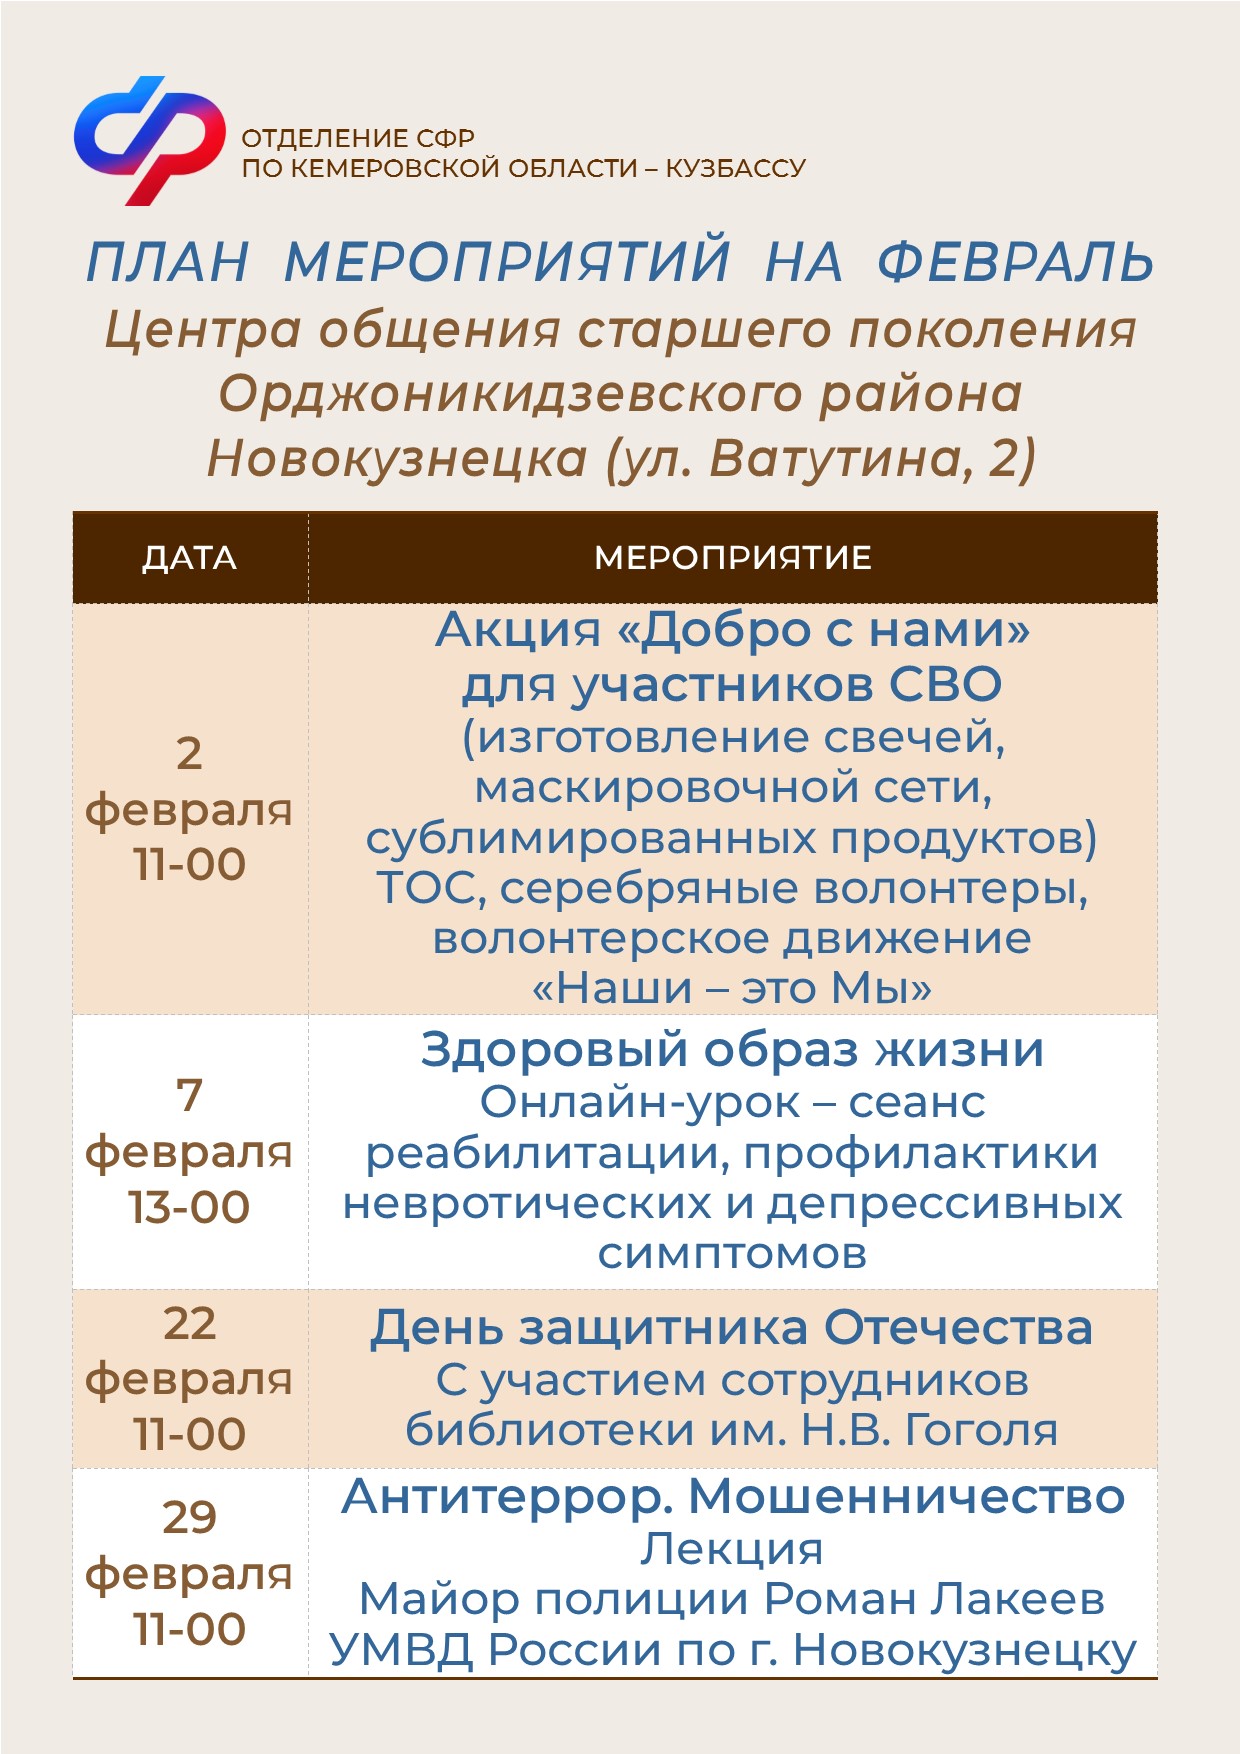 Планы работы на февраль Центров общения старшего поколения в Новокузнецке